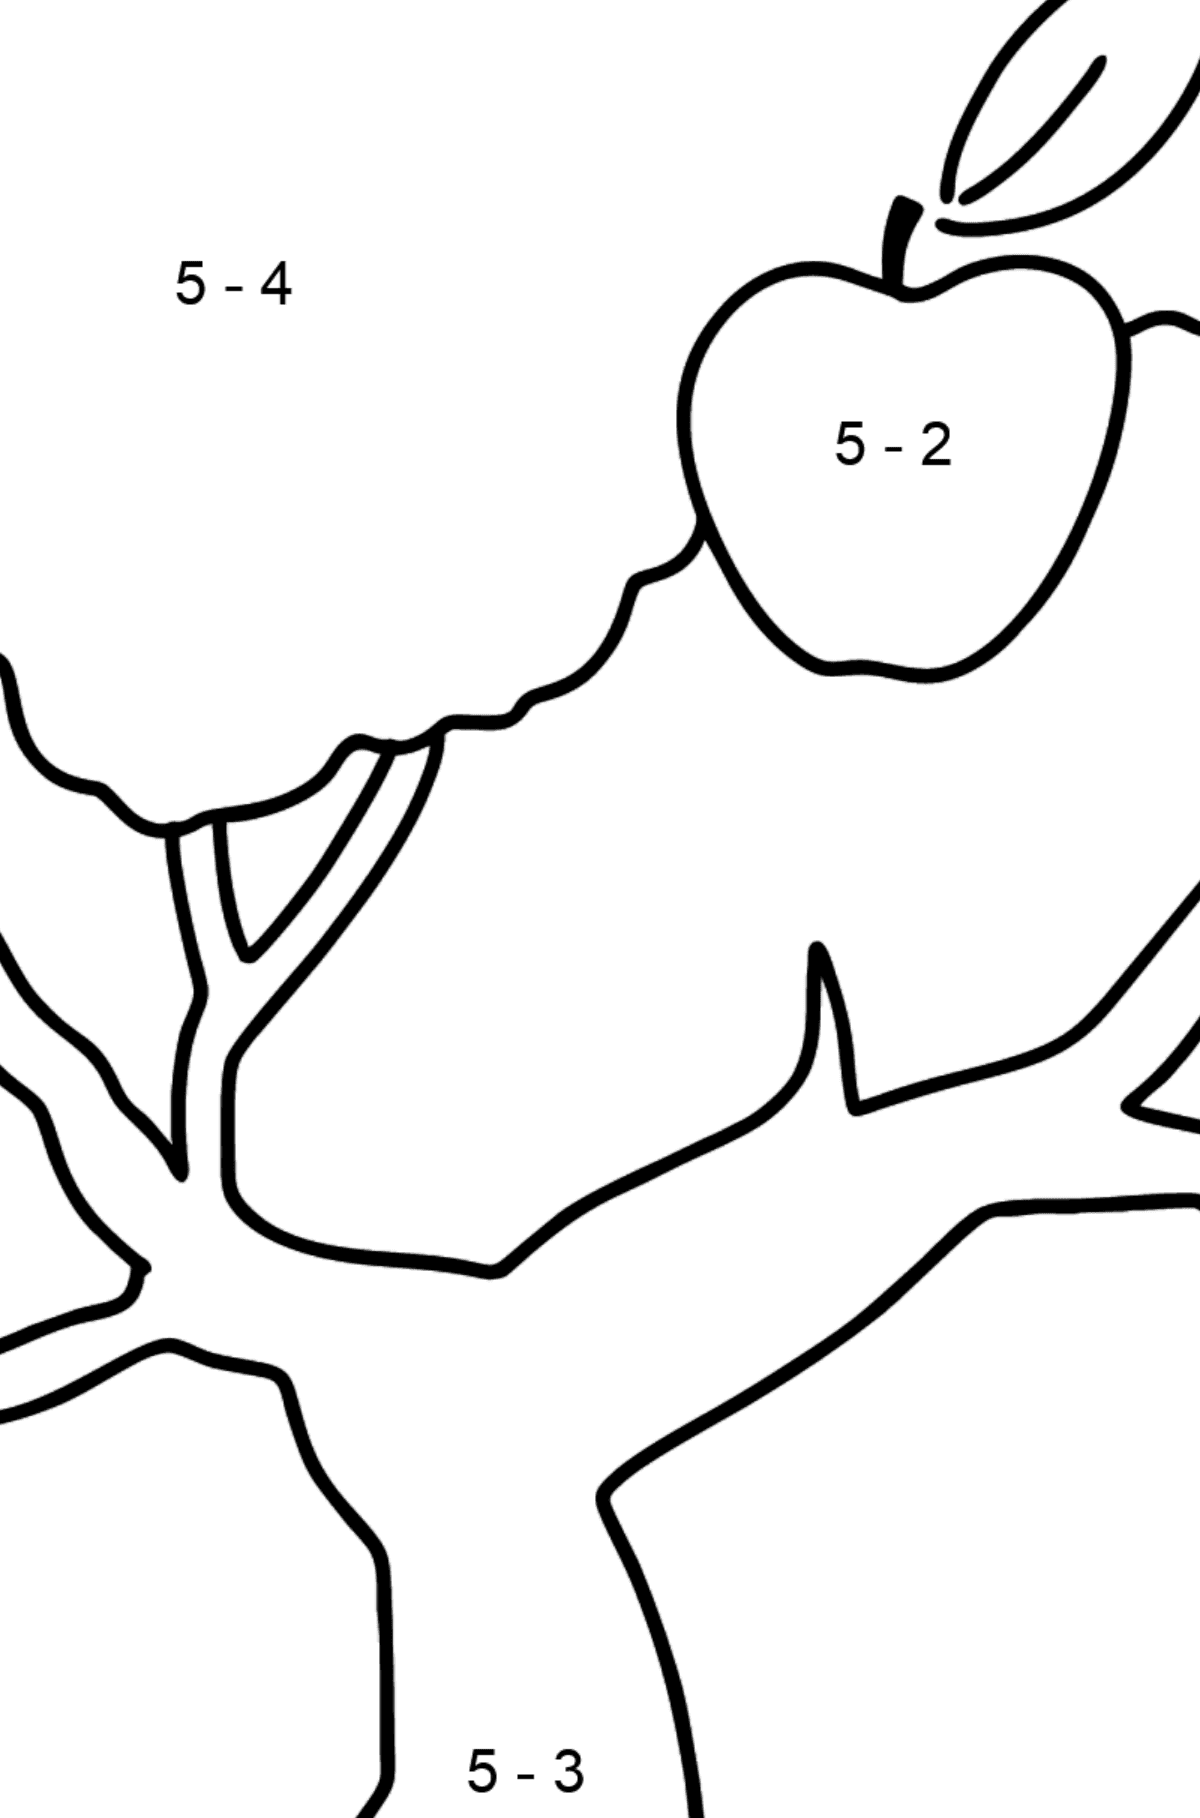 Apfelbaum zum Ausmalen - Mathe Ausmalbilder - Subtraktion für Kinder